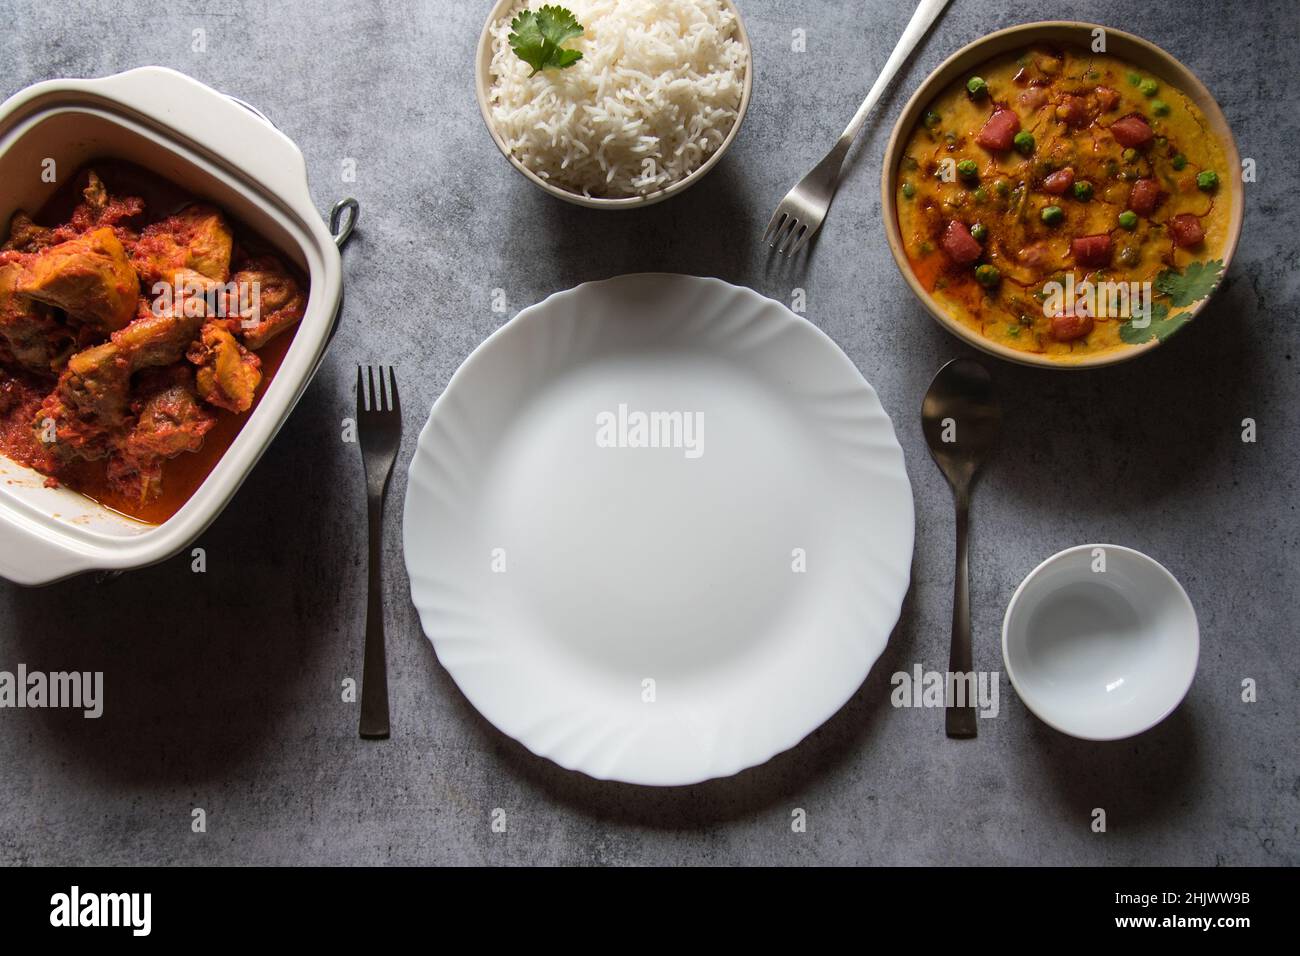 Leerer Teller auf einem Hintergrund zusammen mit gekochten Speisen, die serviert werden sollen. Stockfoto